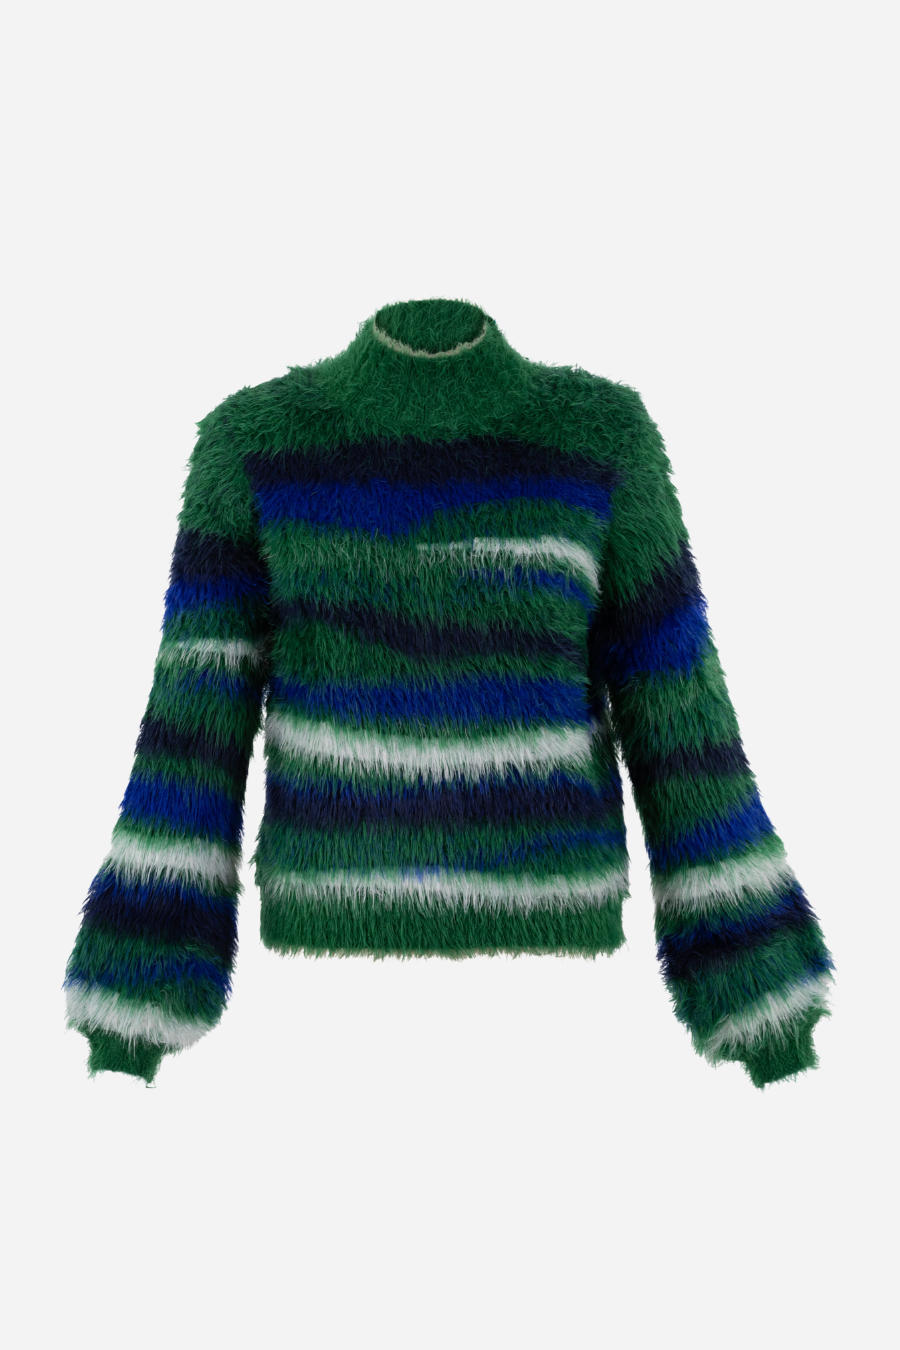 Feather Yarn Sweater